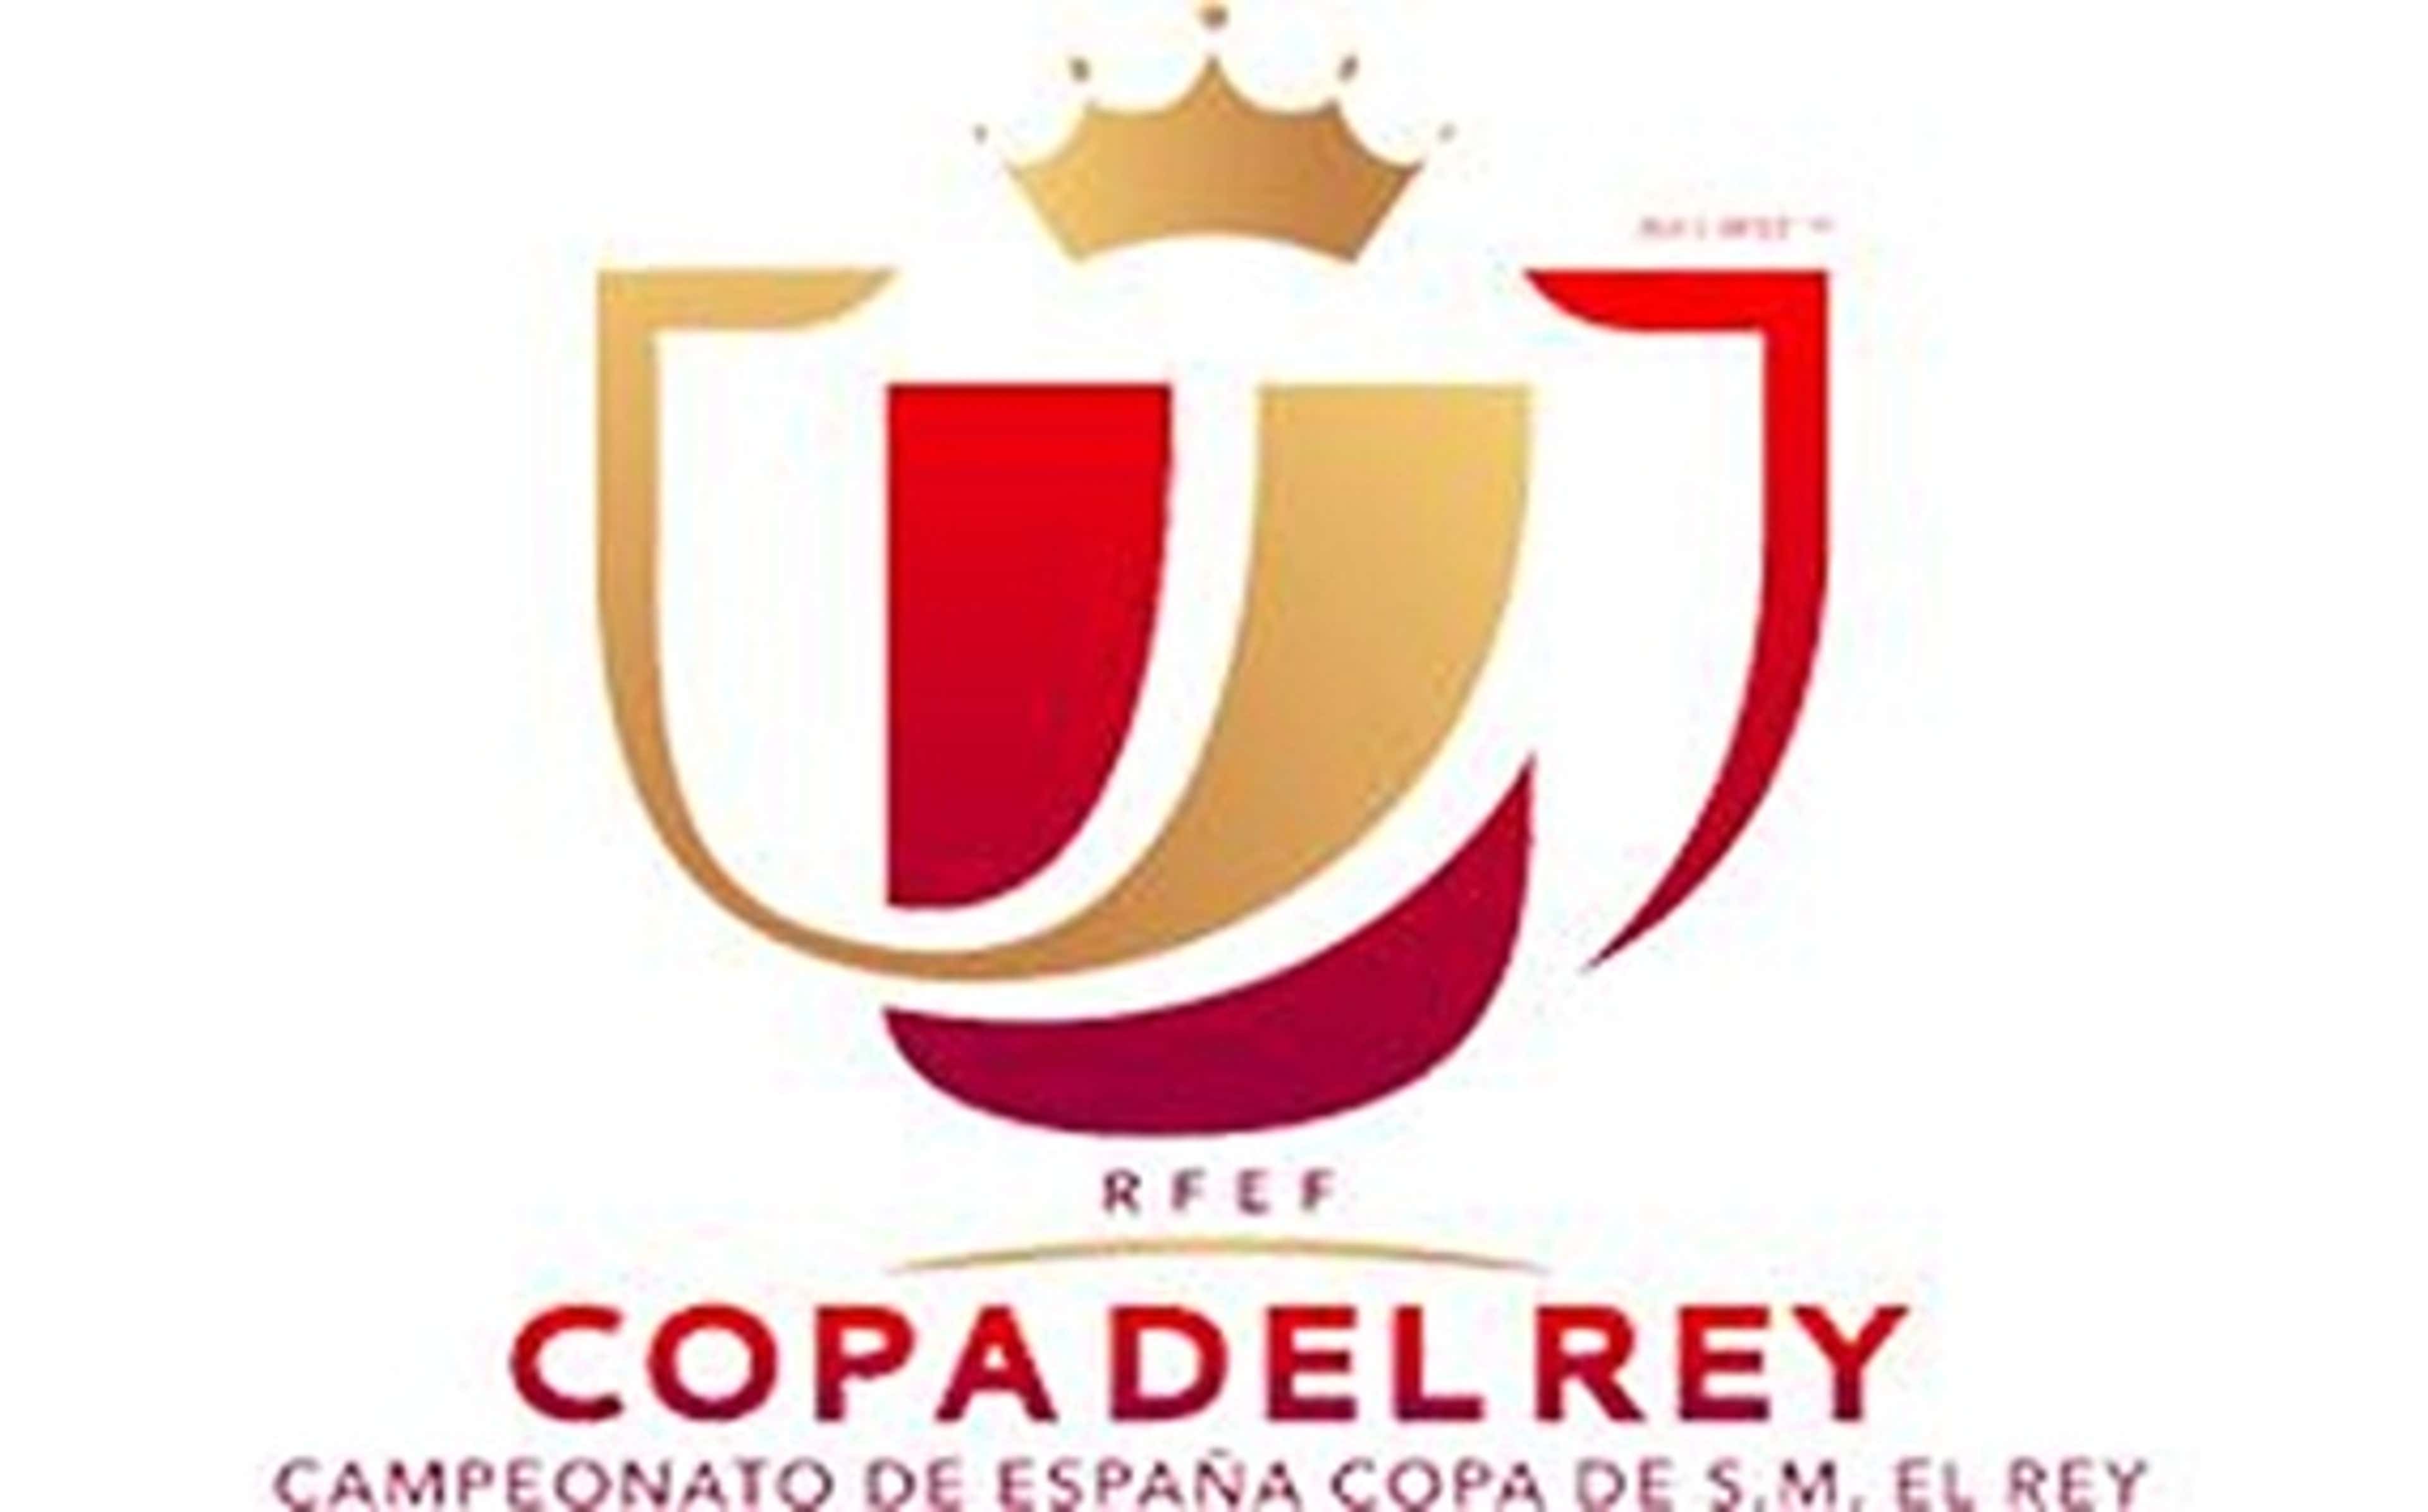 Copa del rey logo